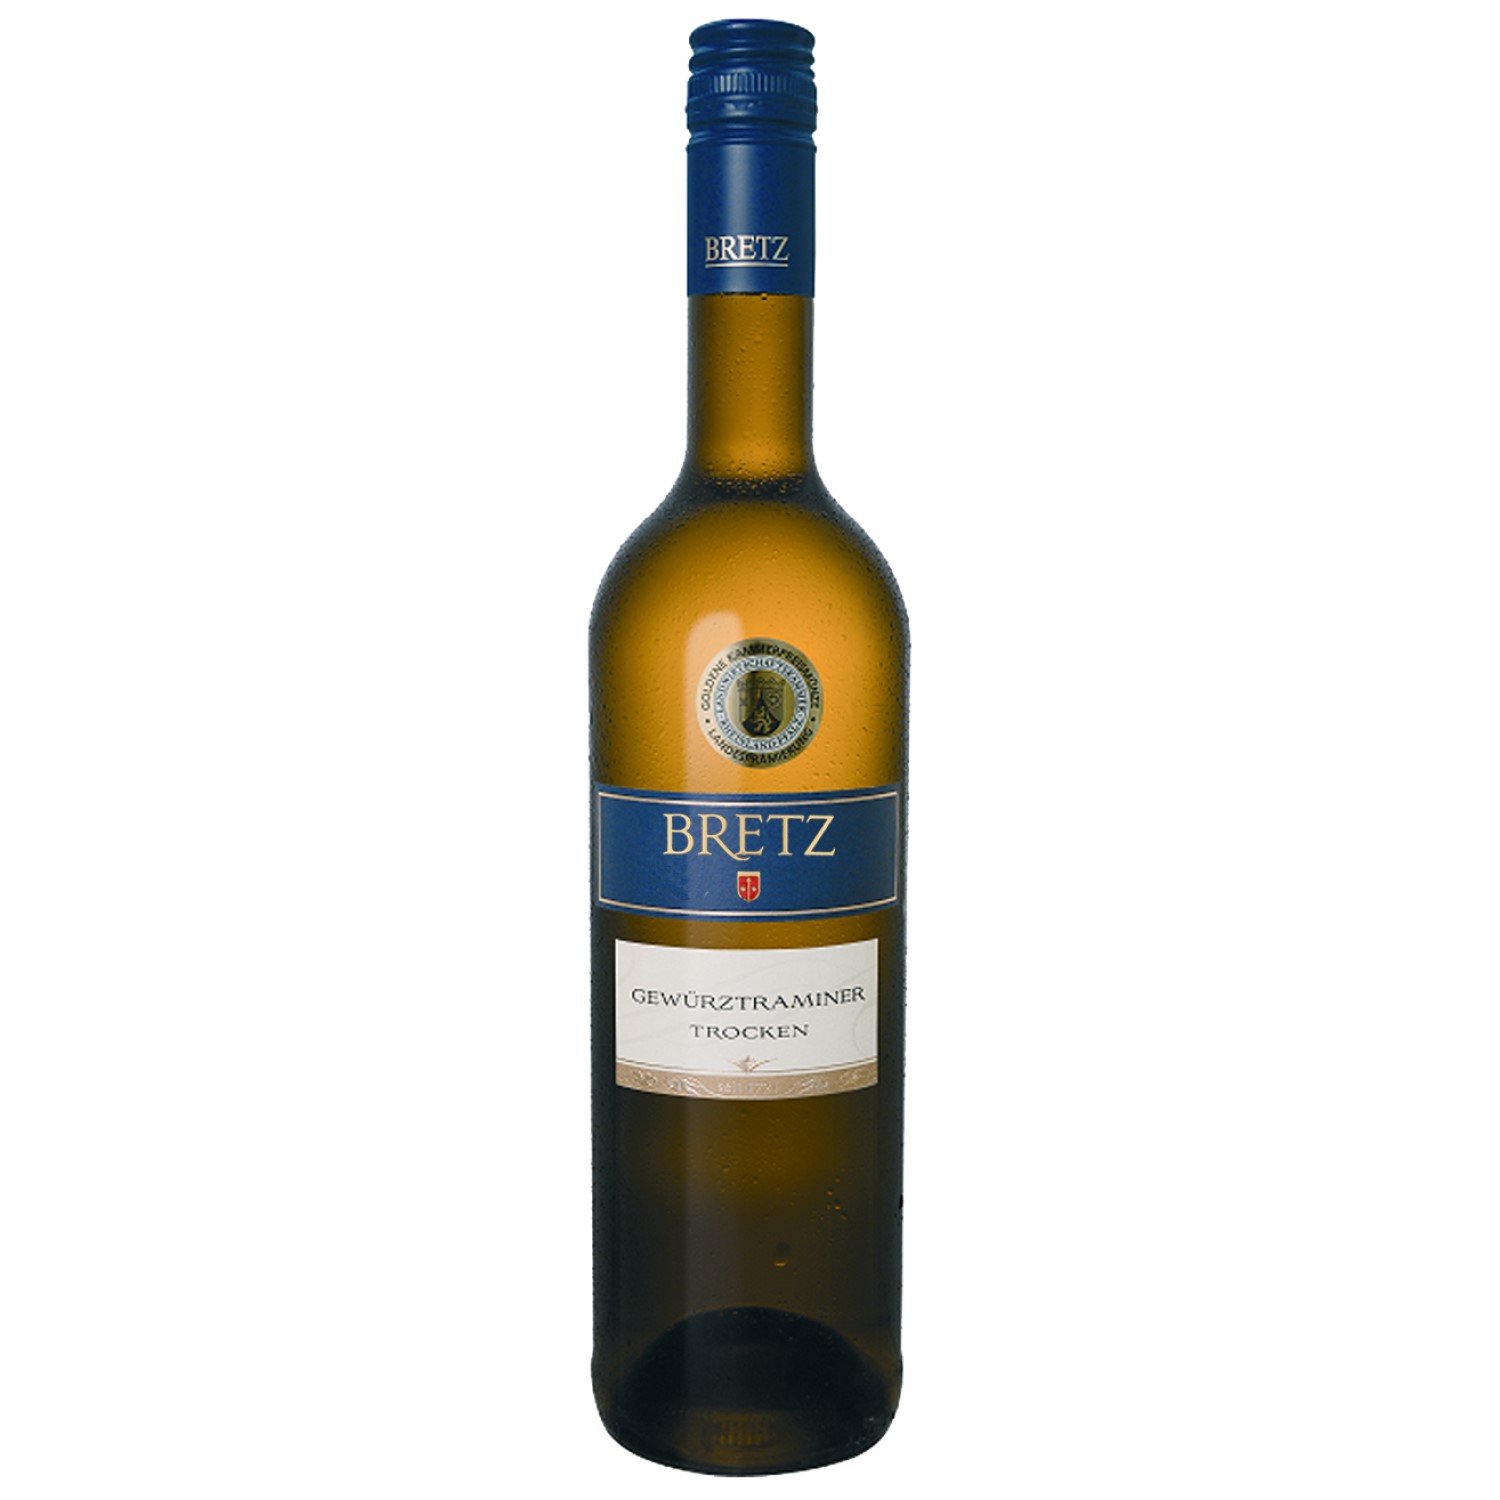 Wino Bretz Gewurztraminer Trocken 0,7 l